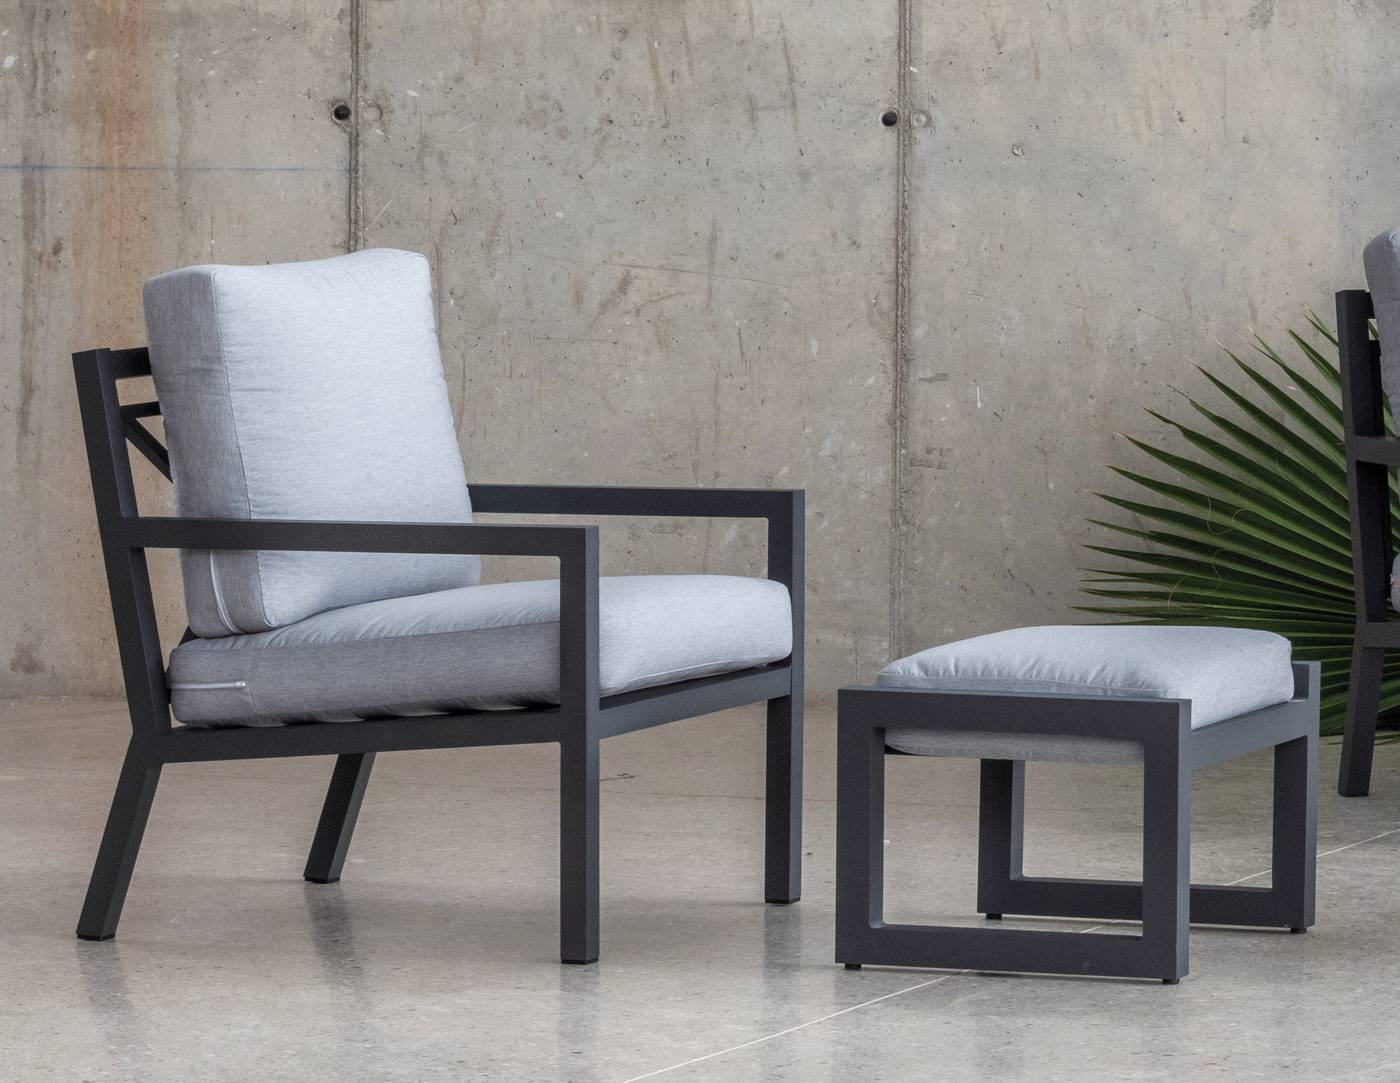 Sillón Aluminio Luxe Dounvil-1 - Cómodo sillón relax de aluminio de alta gama,  con cojines gran confort  fácilmente desenfundables.